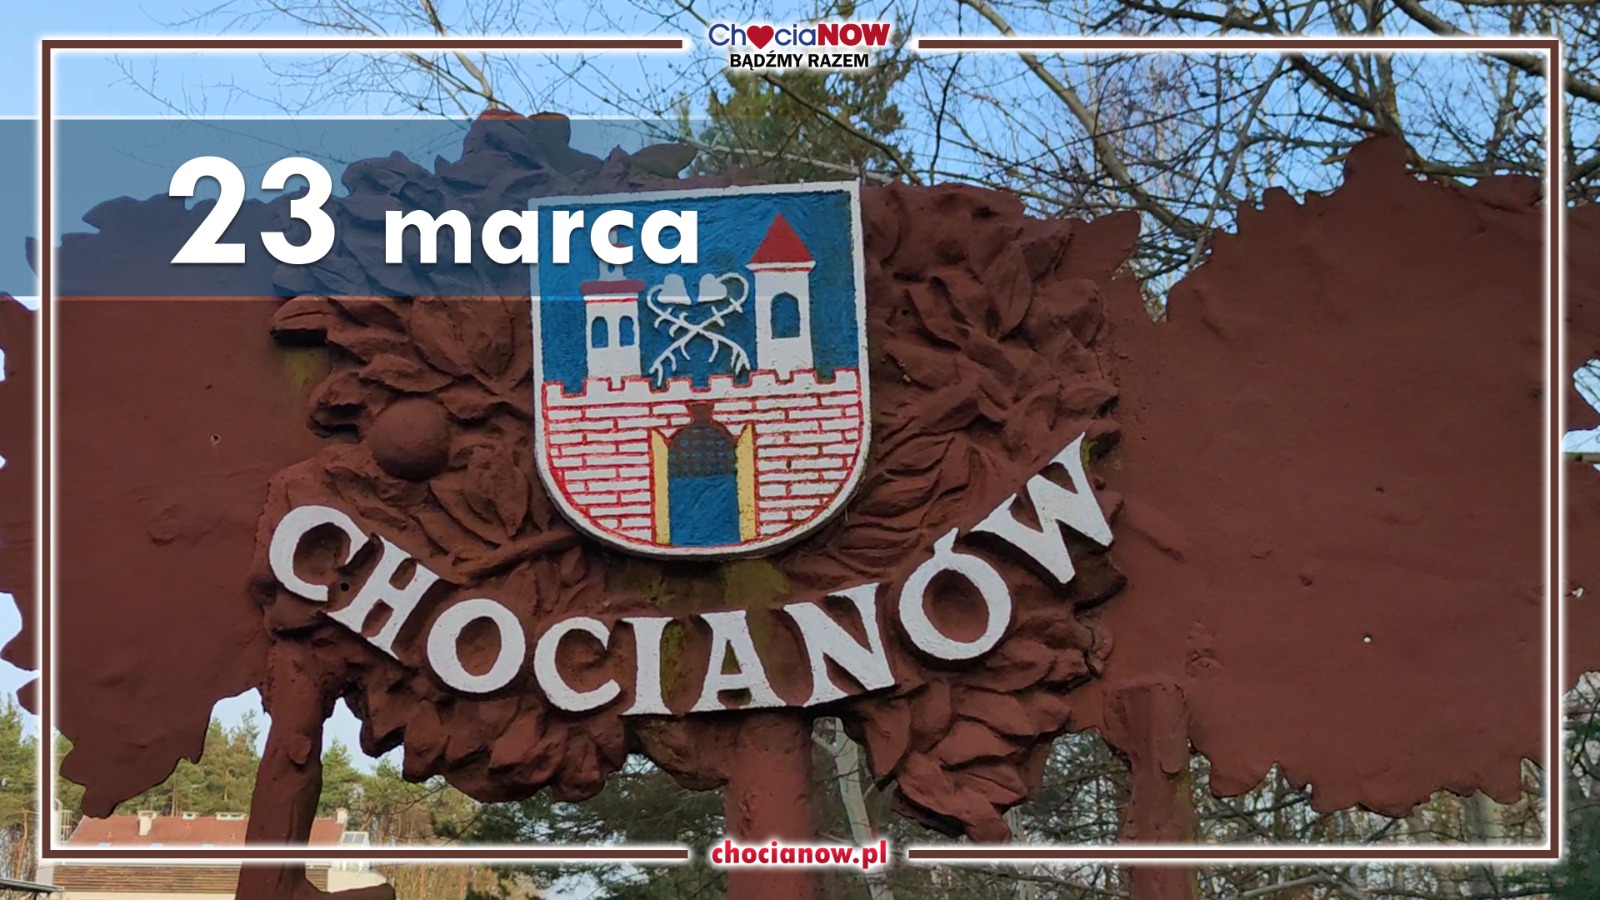 23 marca, zmiana nazwy miejscowości na Chocianów 